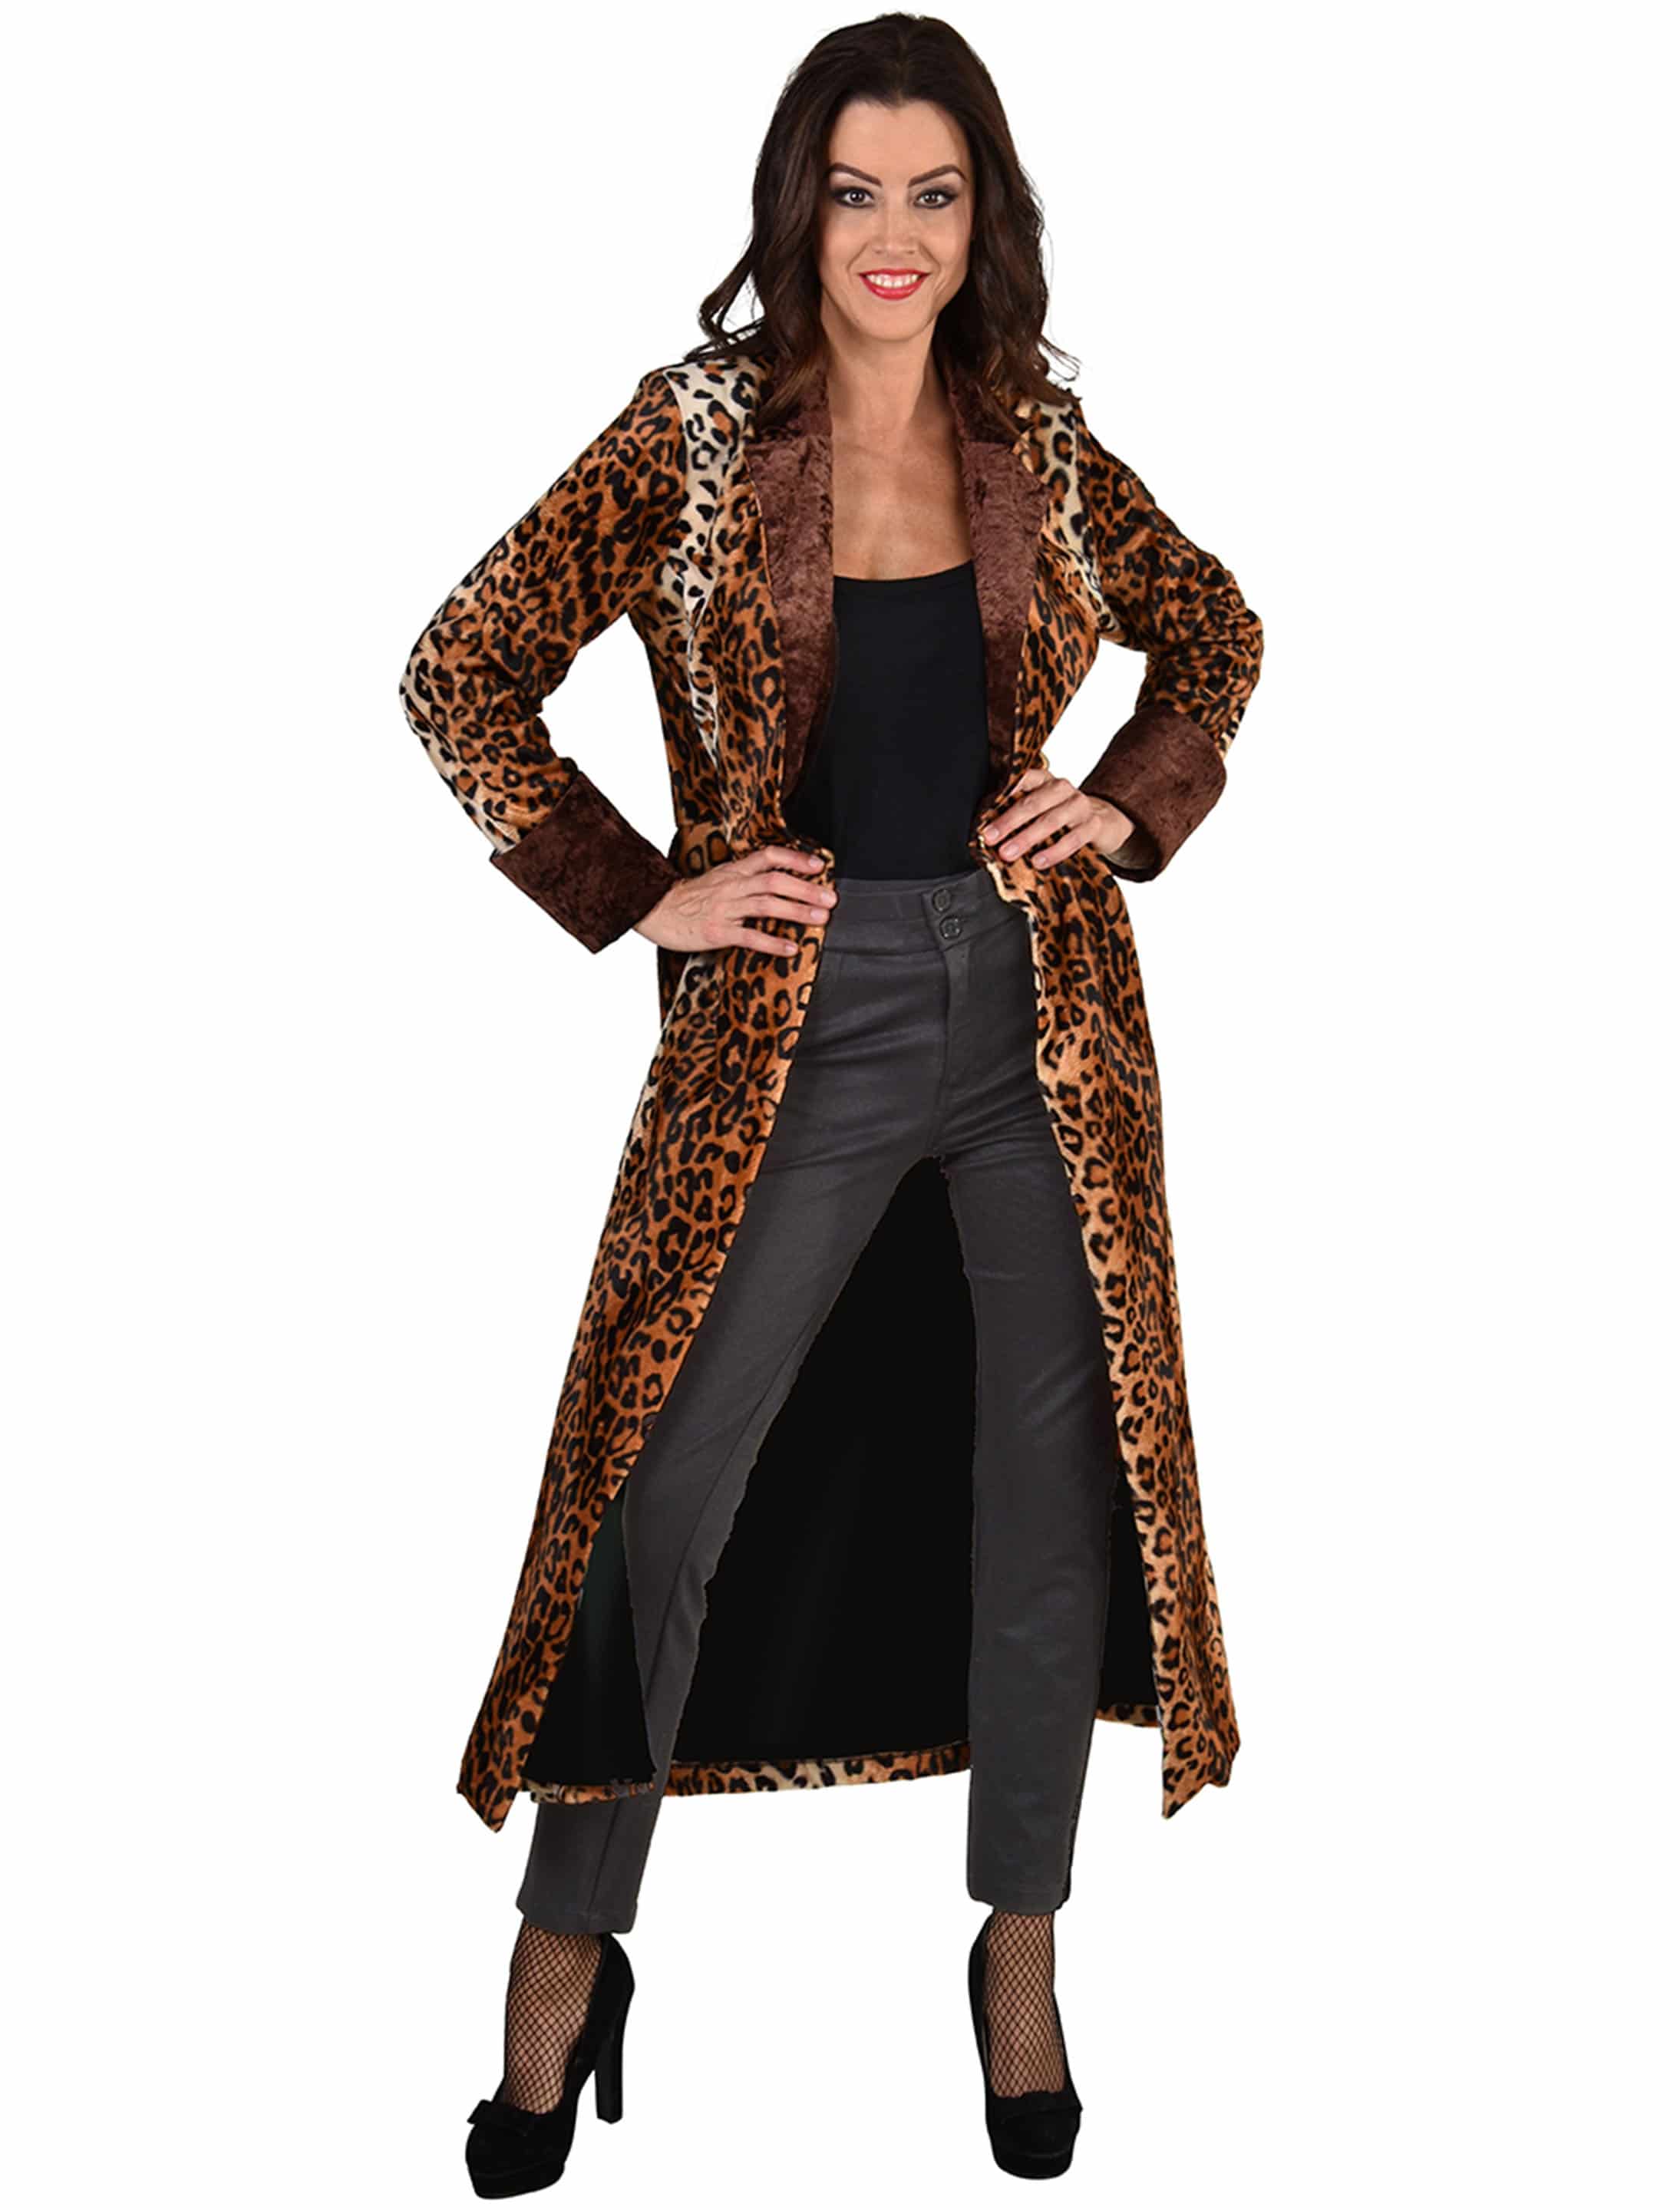 Mantel Leopard Damen schwarz/braun L/XL | schwarz/braun | L/XL |  m224816-041-014